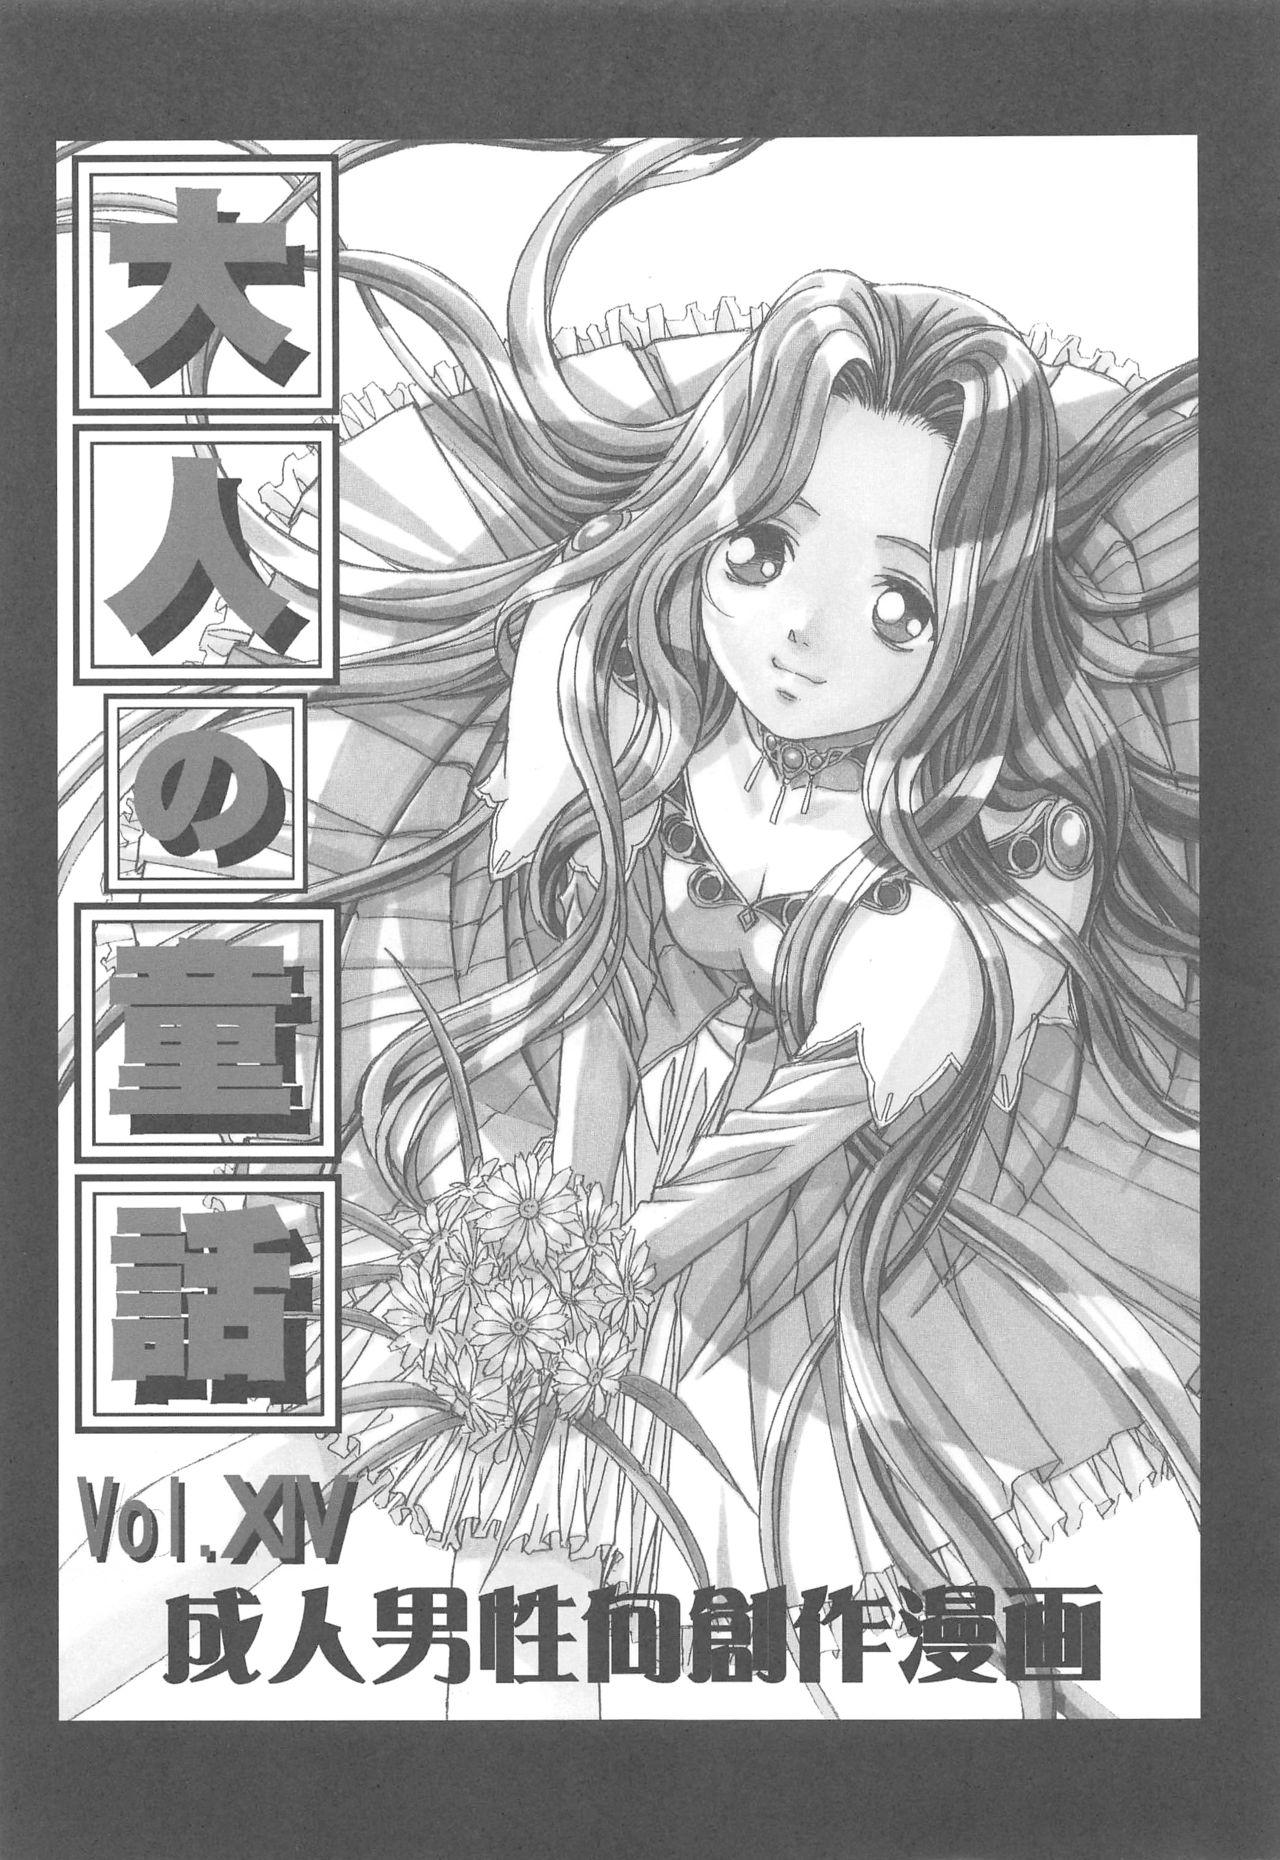 Otonano Do-wa Vol. 14 & Jokei Kazoku Senga shuu 1